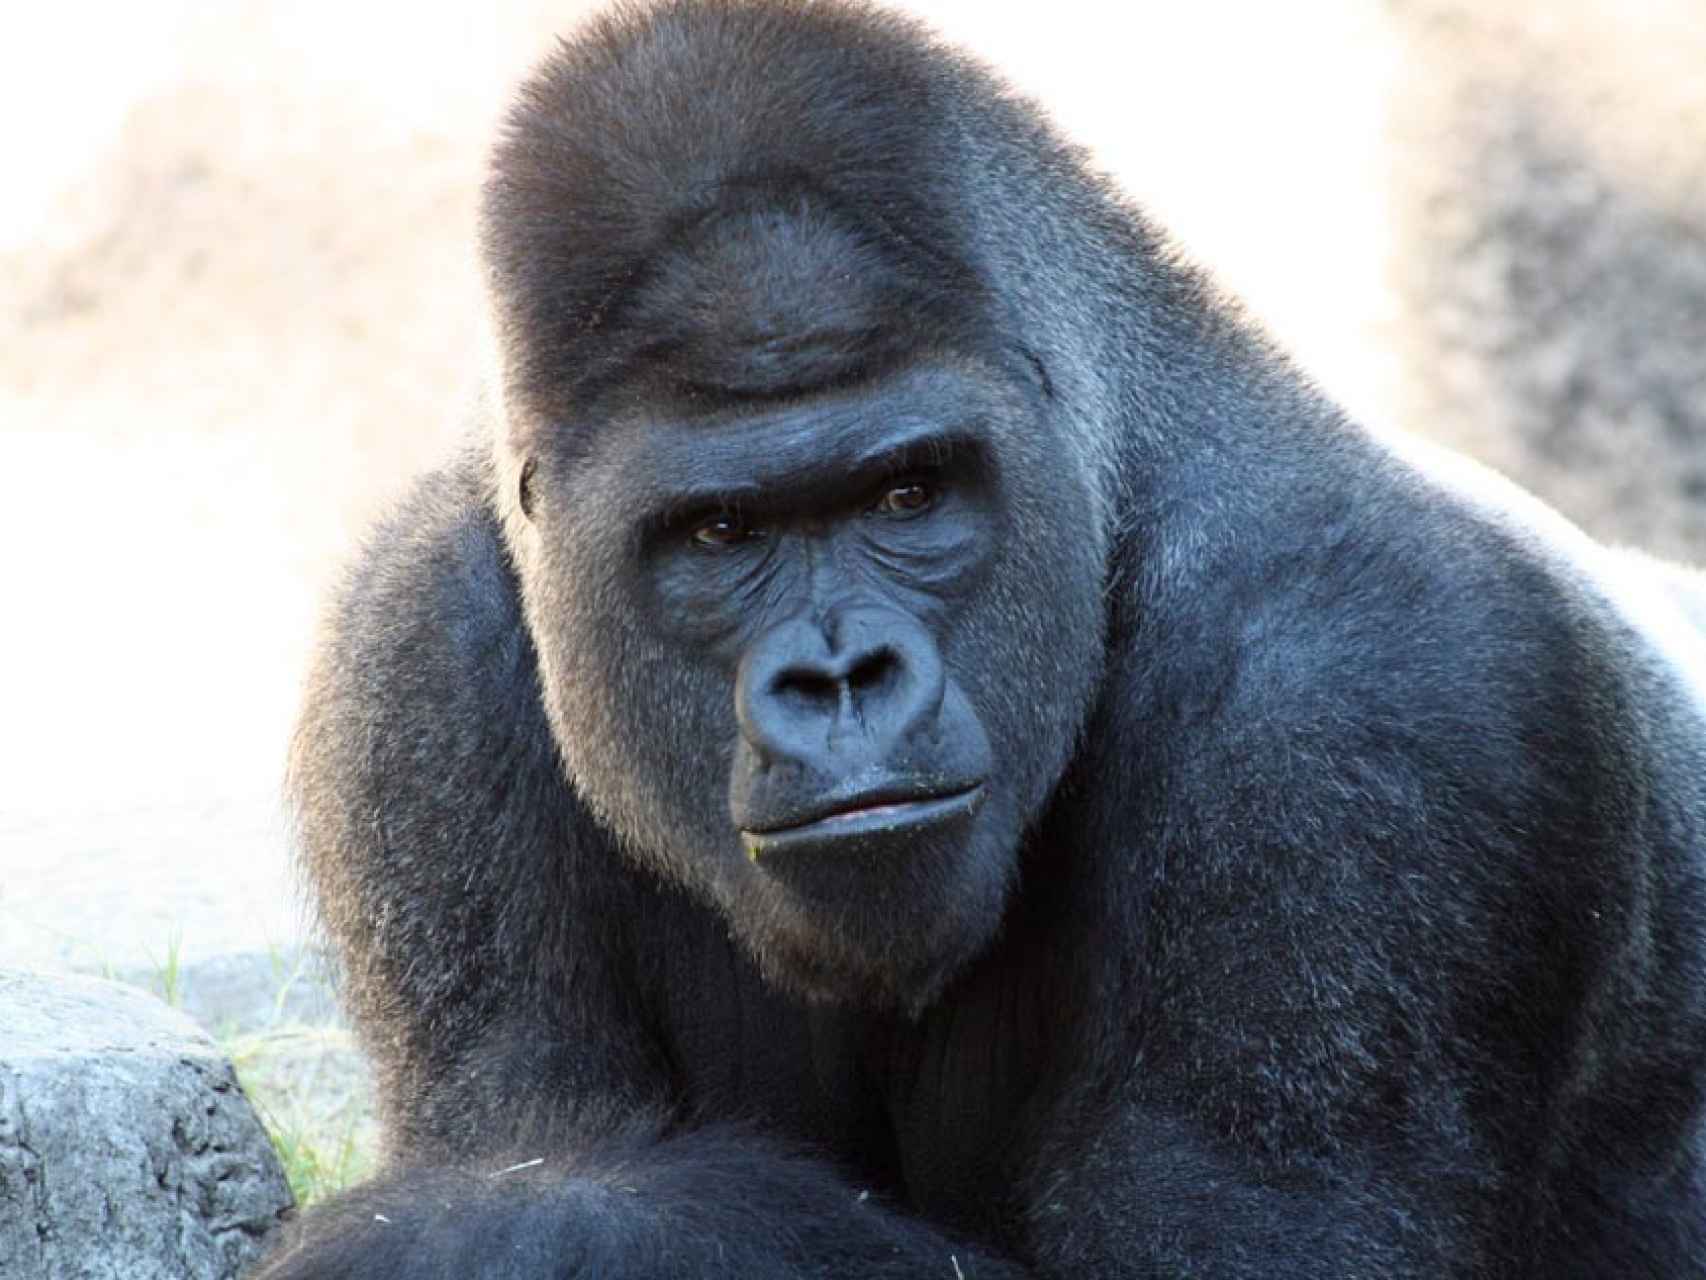 Los gorilas son animales vegetarianos con diferencias entre machos y hembras en cuanto a su agresividad.